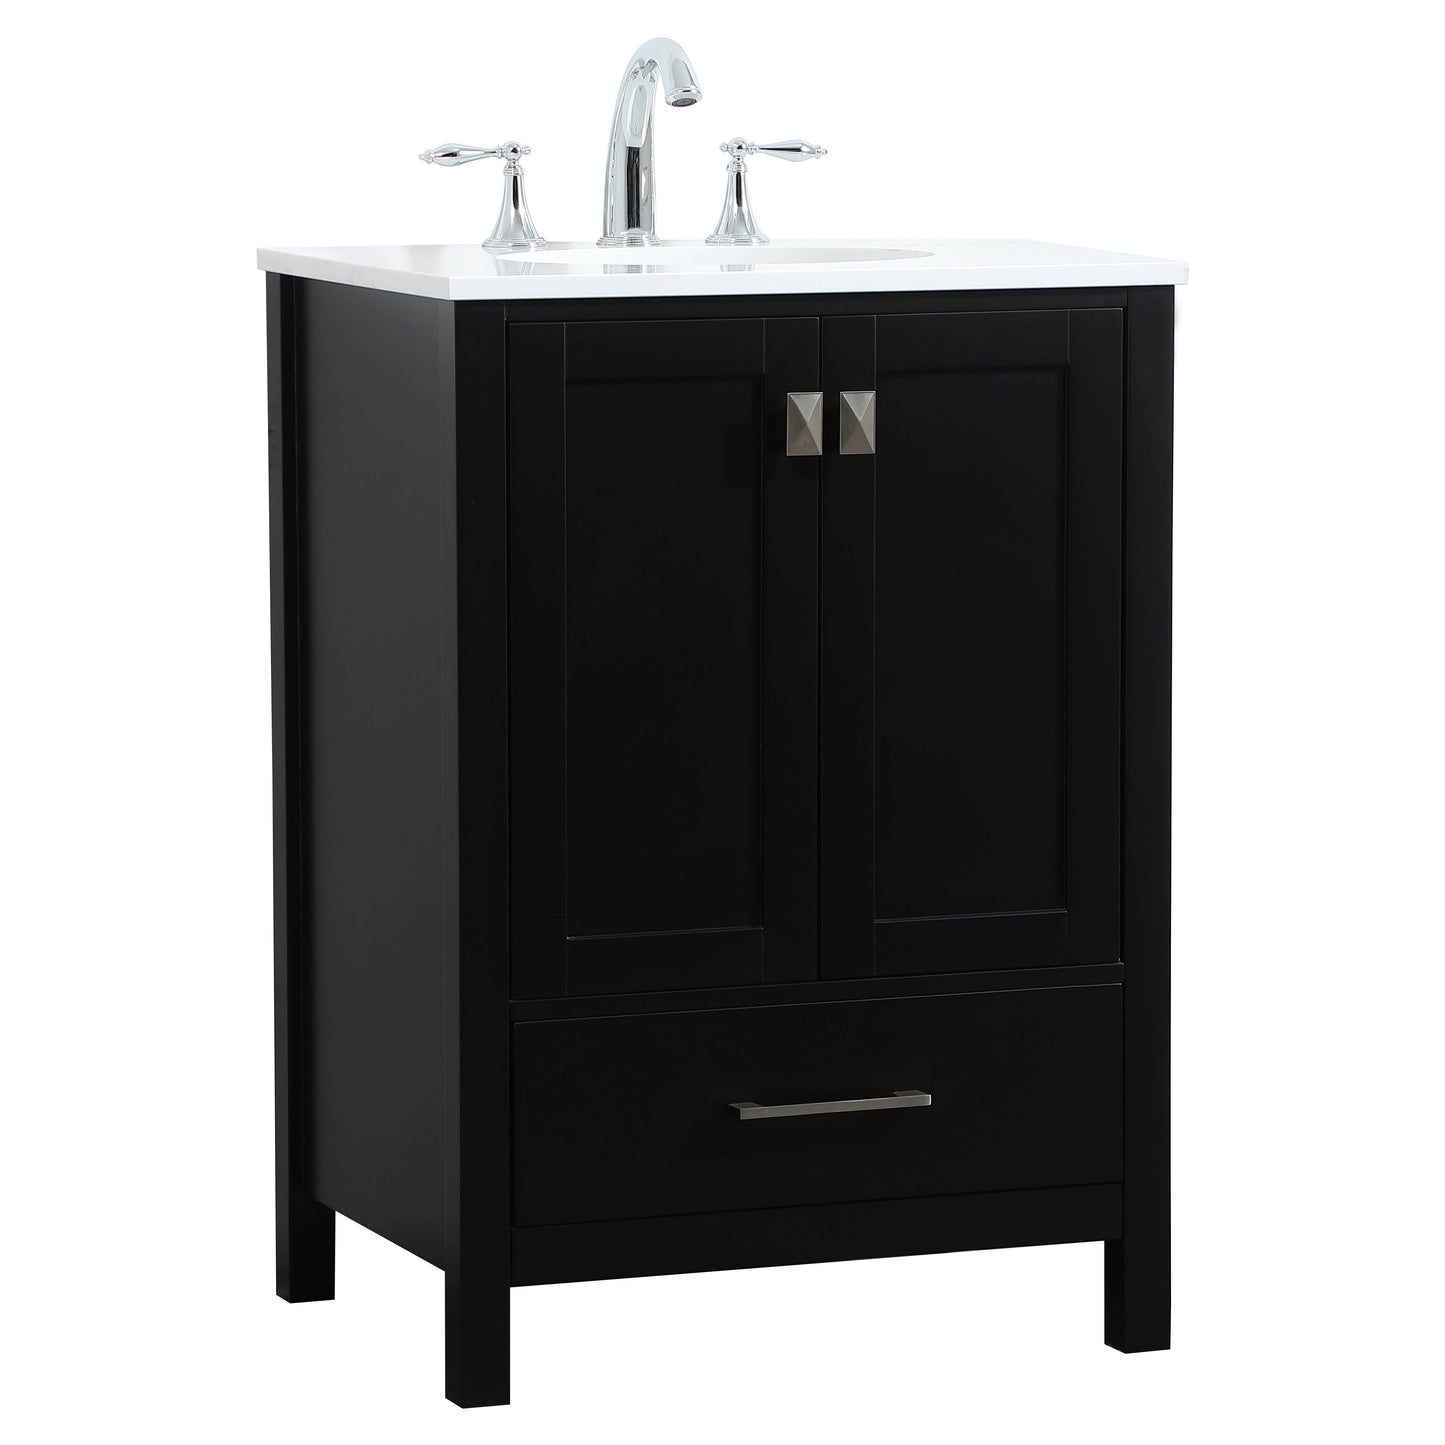 VF18824BK 24" Single Bathroom Vanity in Black